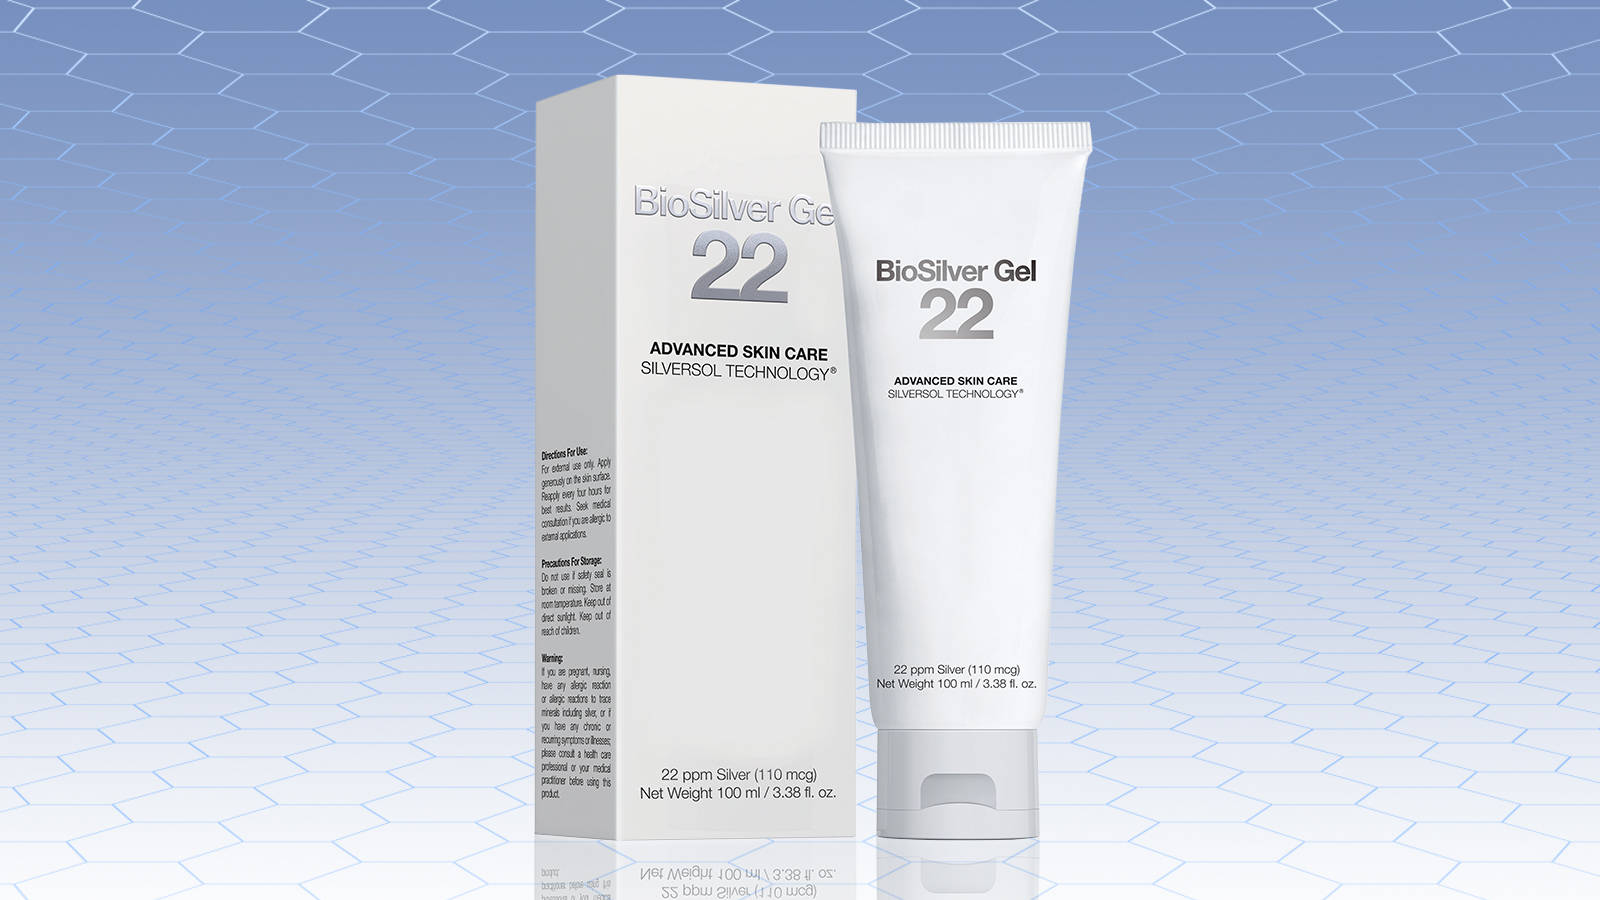 22 gel. Bio Gel Silver. Bio Gel Silver биоревитализация. Сильвер гель для суставов. BIOSILVER Gel 22 Advanced Skin Care SILVERSOL Technology.